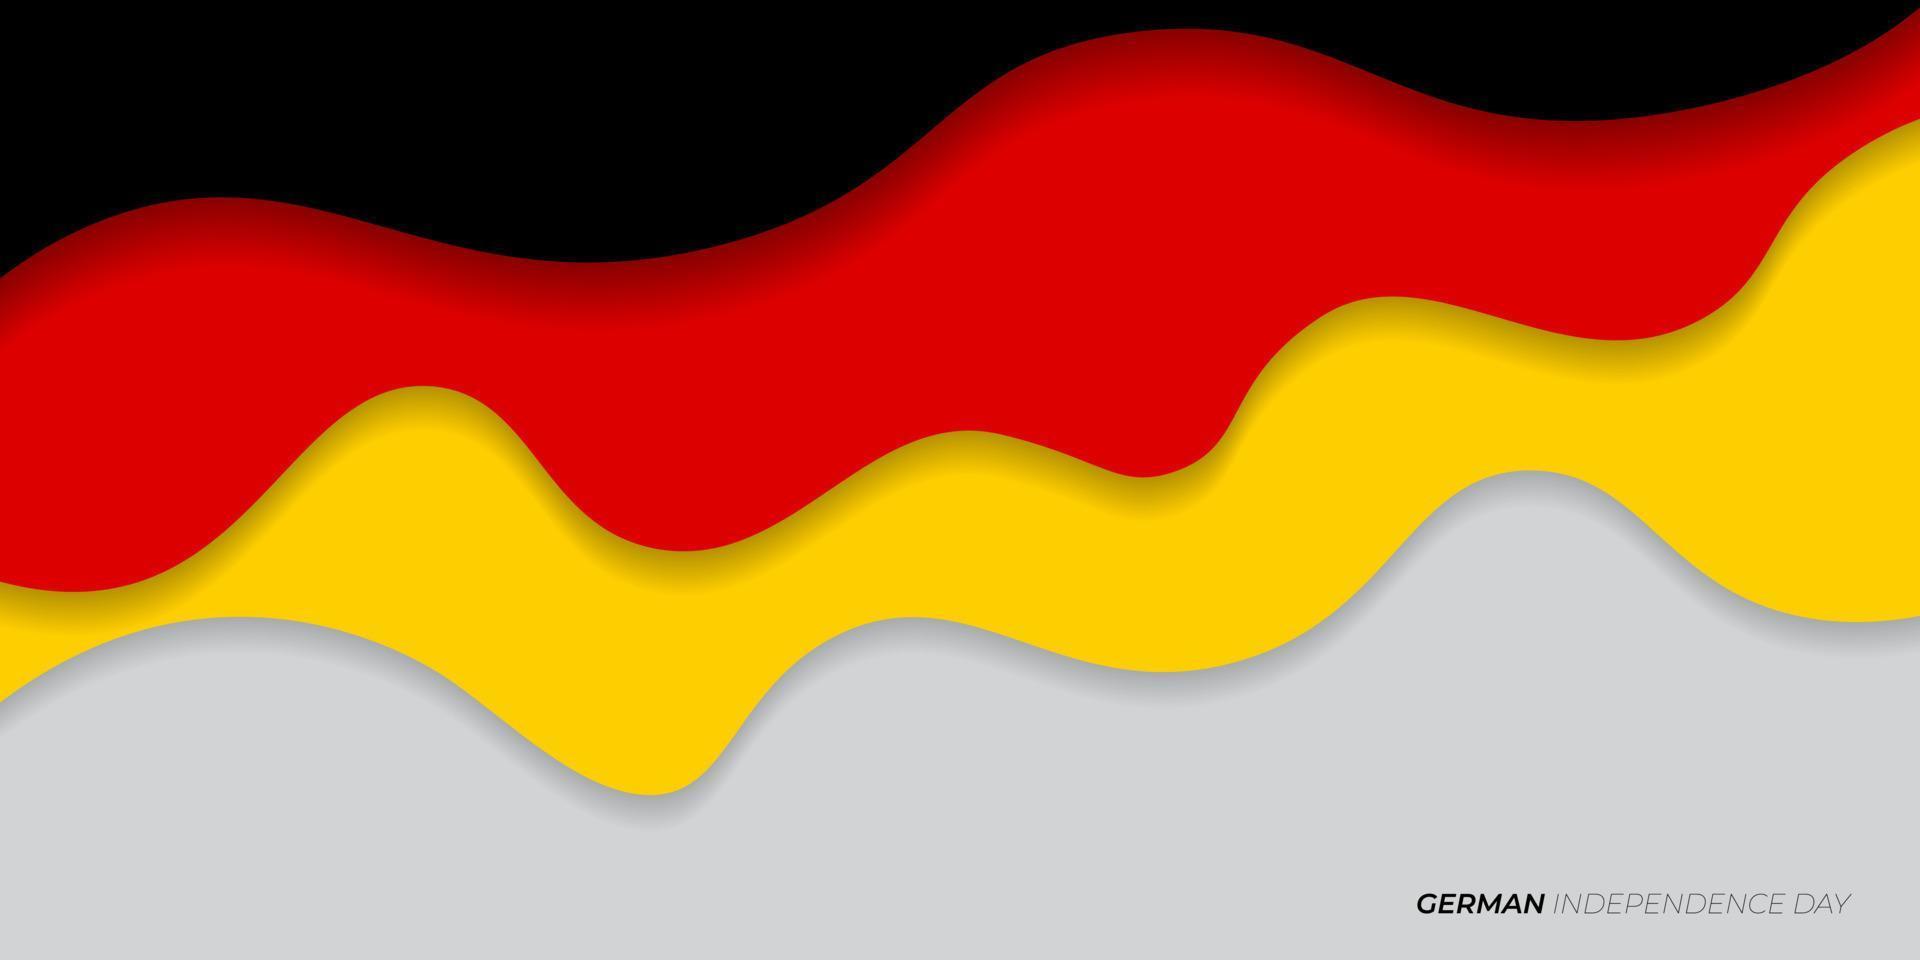 schwarzes, rotes und gelbes Papierschnittdesign. deutschland text bedeuten ist deutscher unabhängigkeitstag. vektor